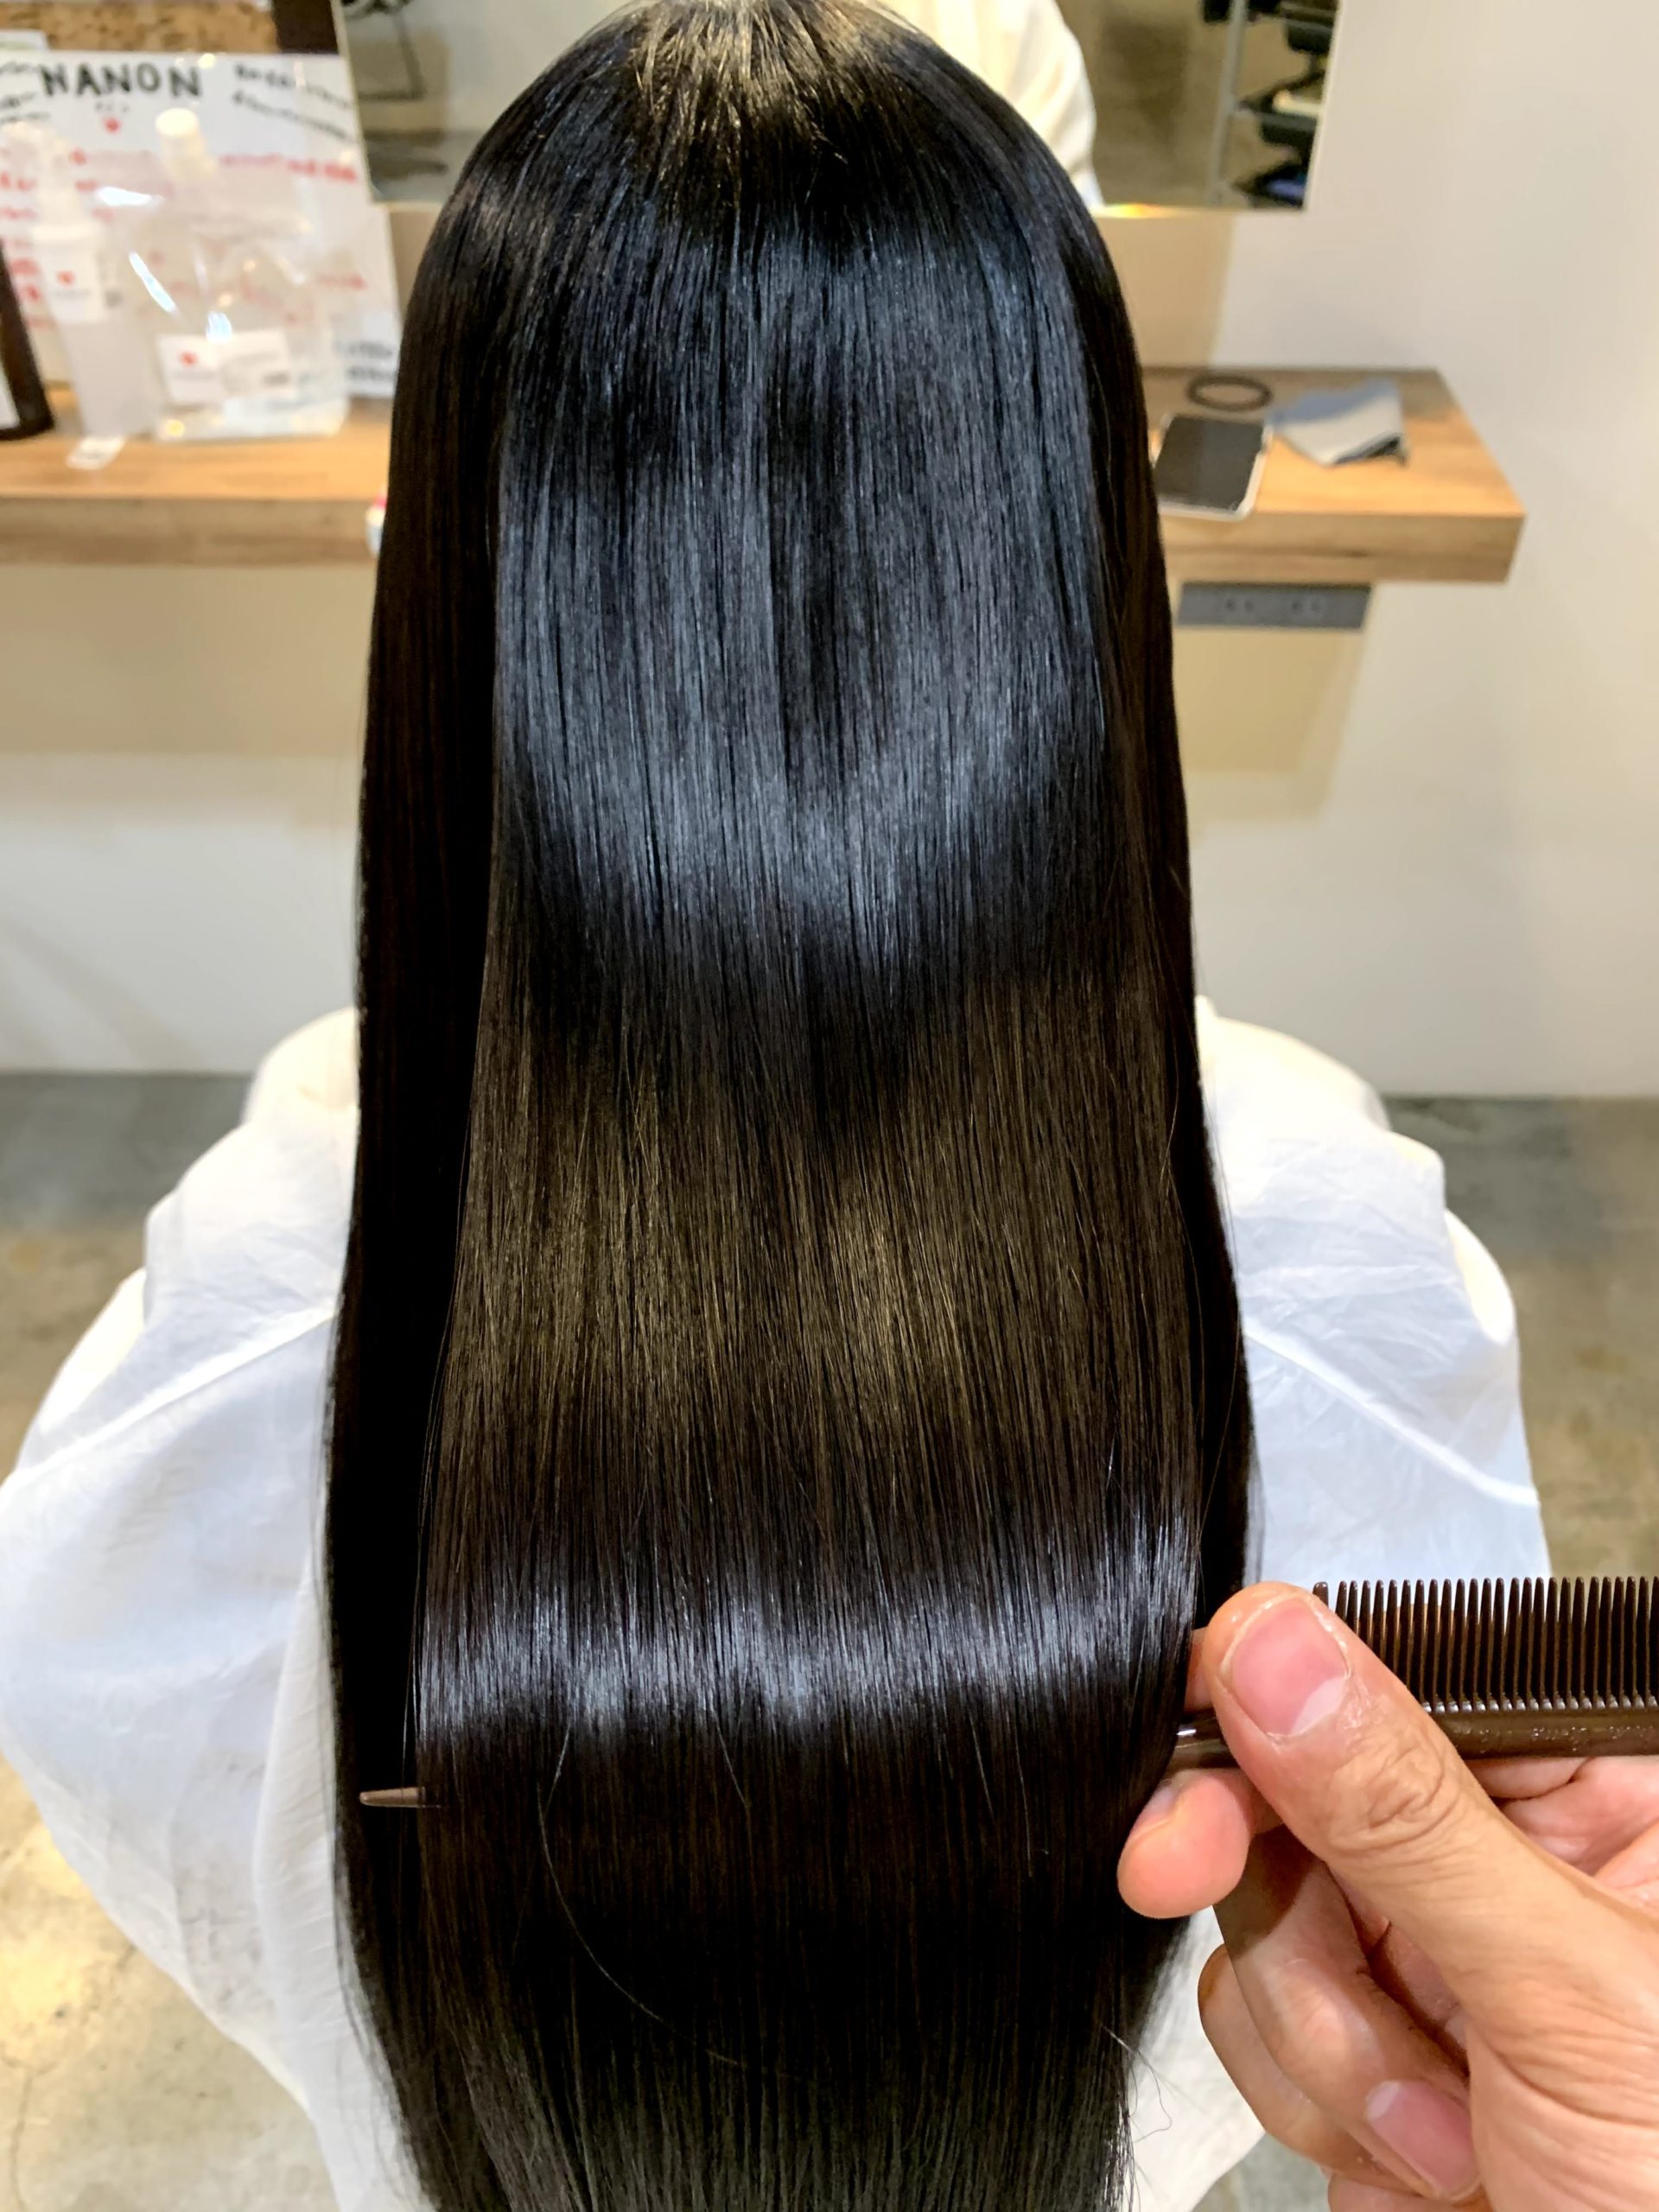 高田馬場の美容室ideal アイディール 髪質改善で選ばれる人気の艶髪美容室 ヘアサロン